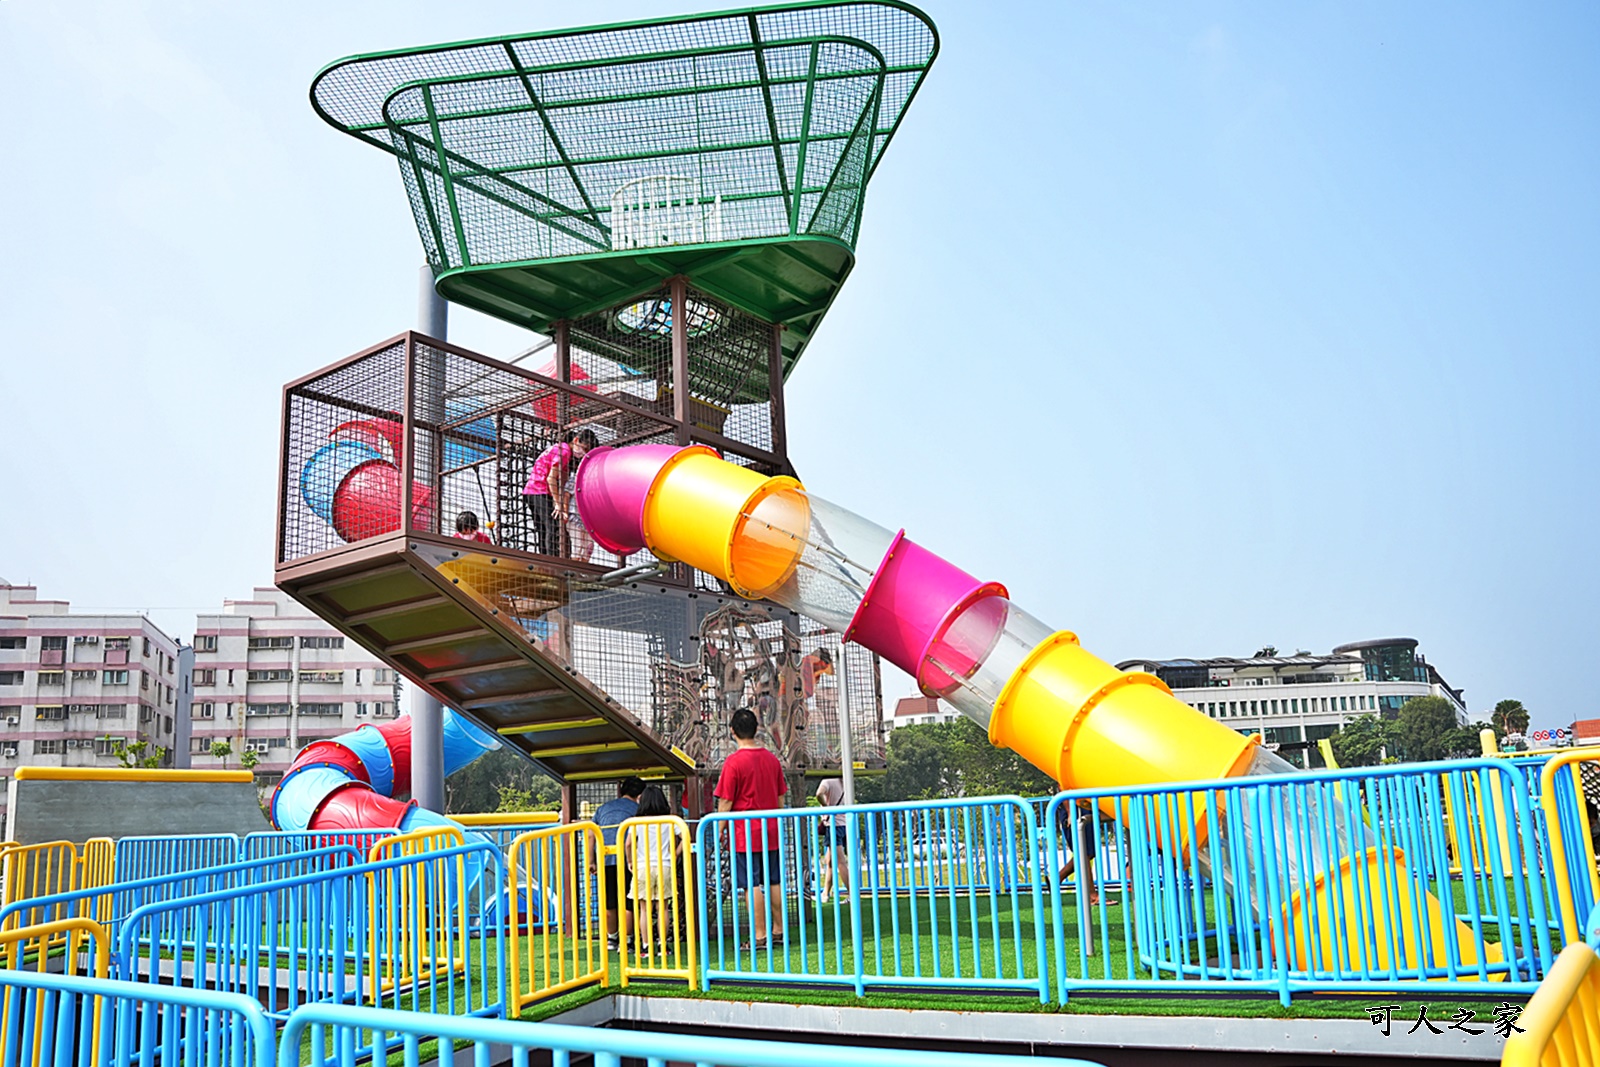 健康綠洲公園,台南景點,台南親子景點,台南遛小孩,溜滑梯,滑索區,玩沙景點